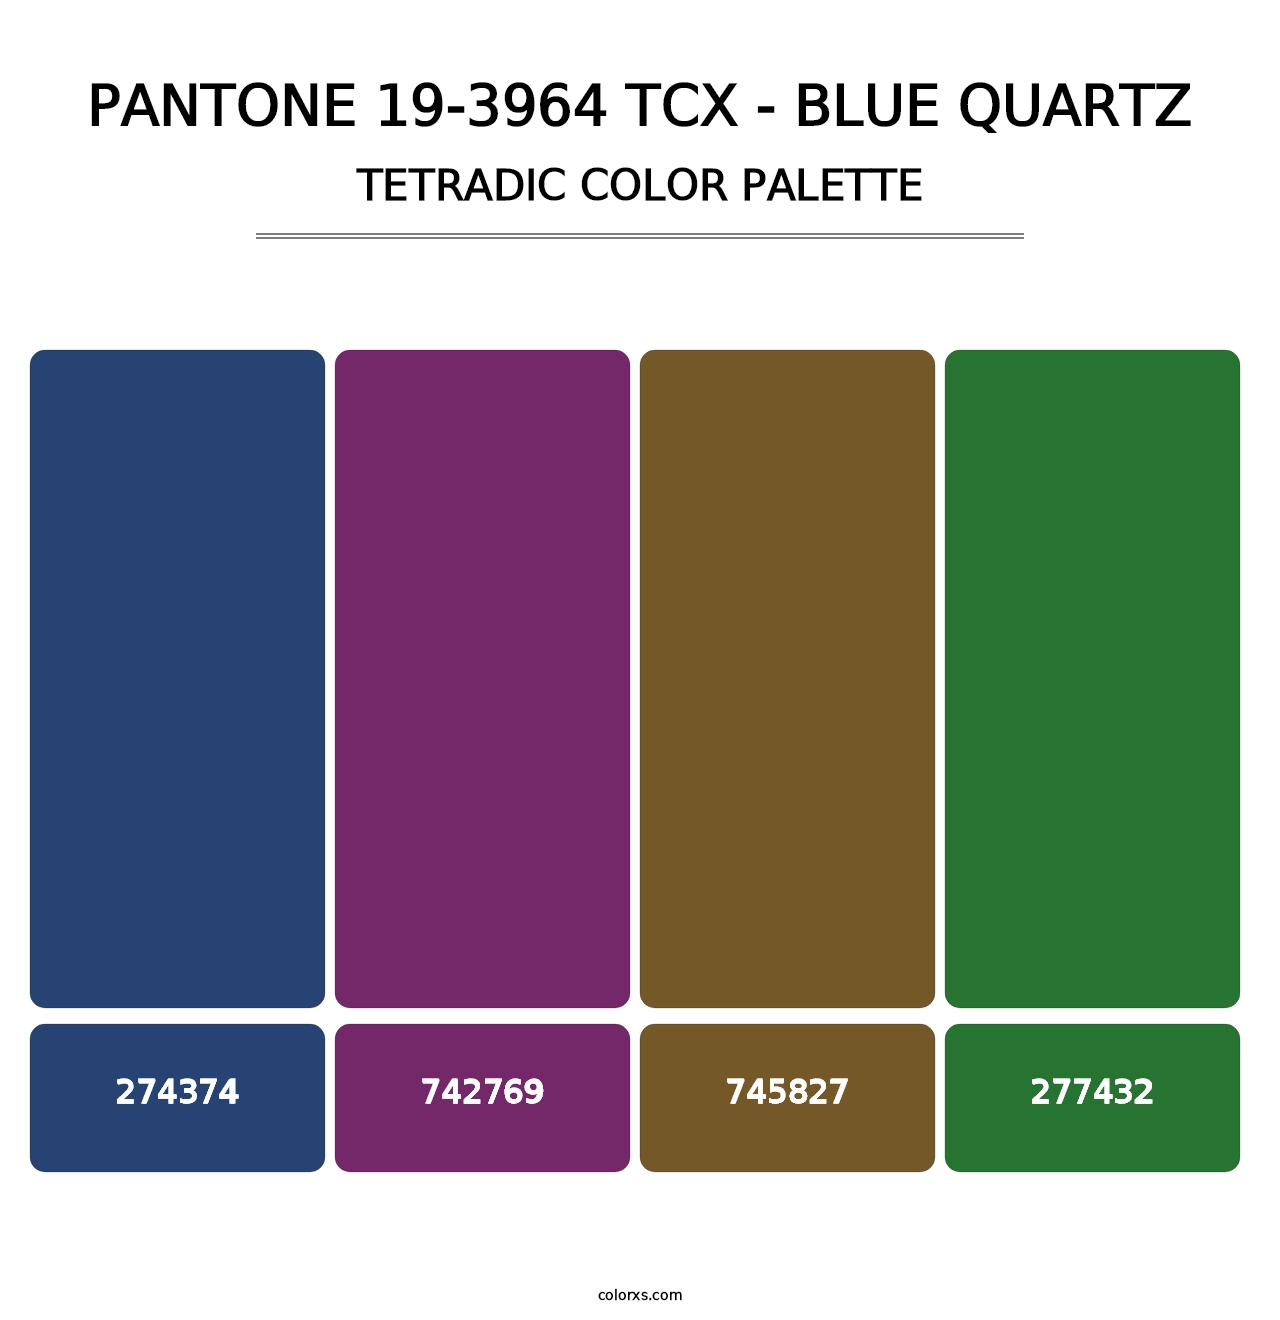 PANTONE 19-3964 TCX - Blue Quartz - Tetradic Color Palette